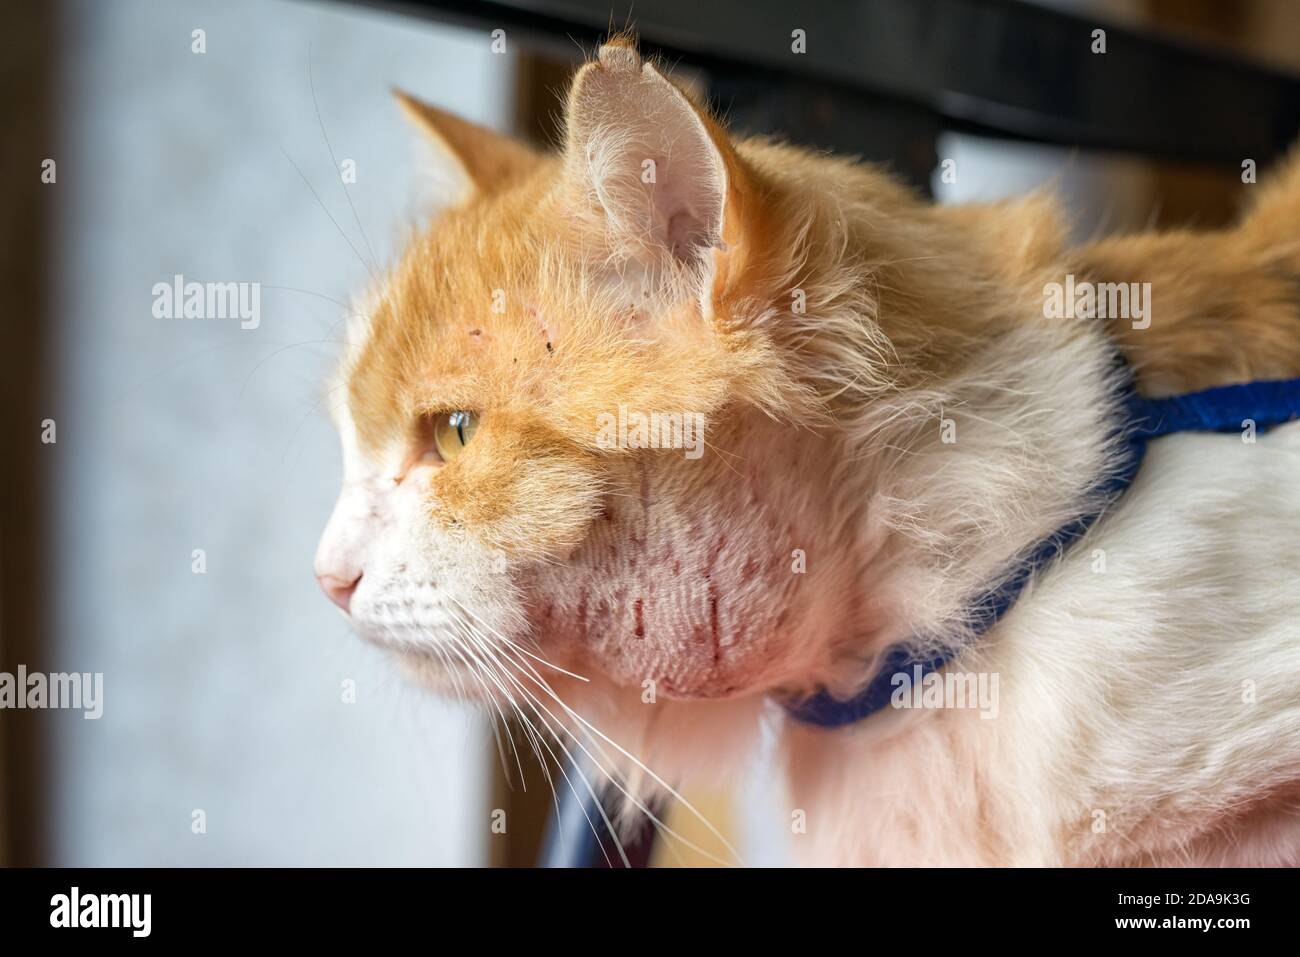 Abszess am Hals der Katze. Tiere, die auf der Straße laufen, sind eher infiziert. Kratzer aus dem Kampf mit anderen Tieren führen zu Inflam Stockfoto